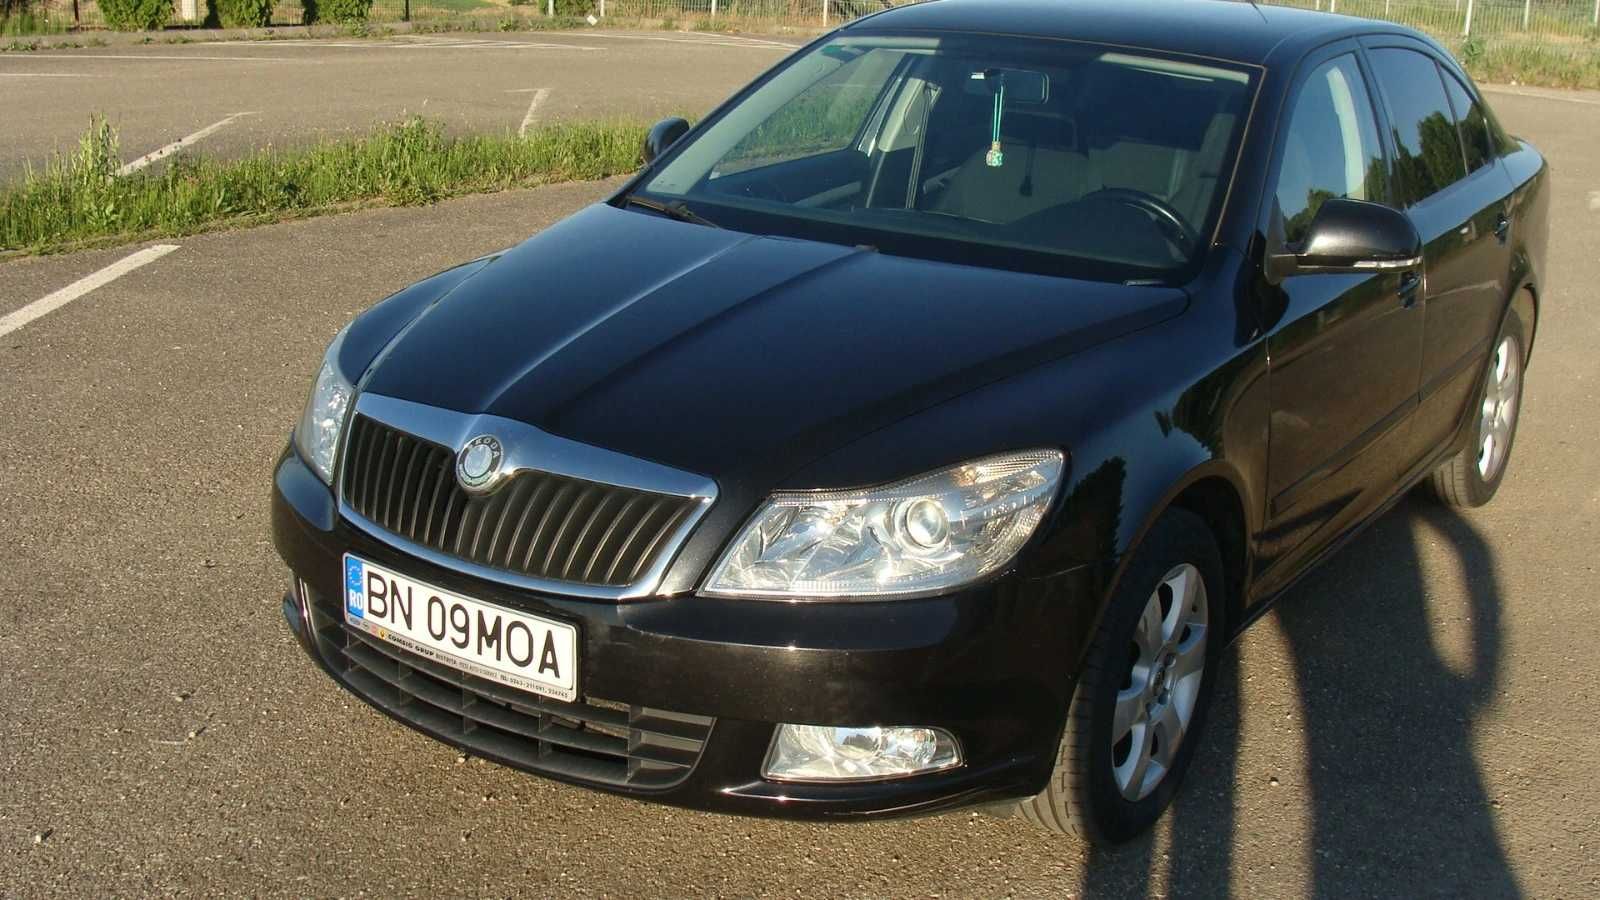 Inchirieri Auto / Rent a Car Cluj Napoca MOA Rent a Car